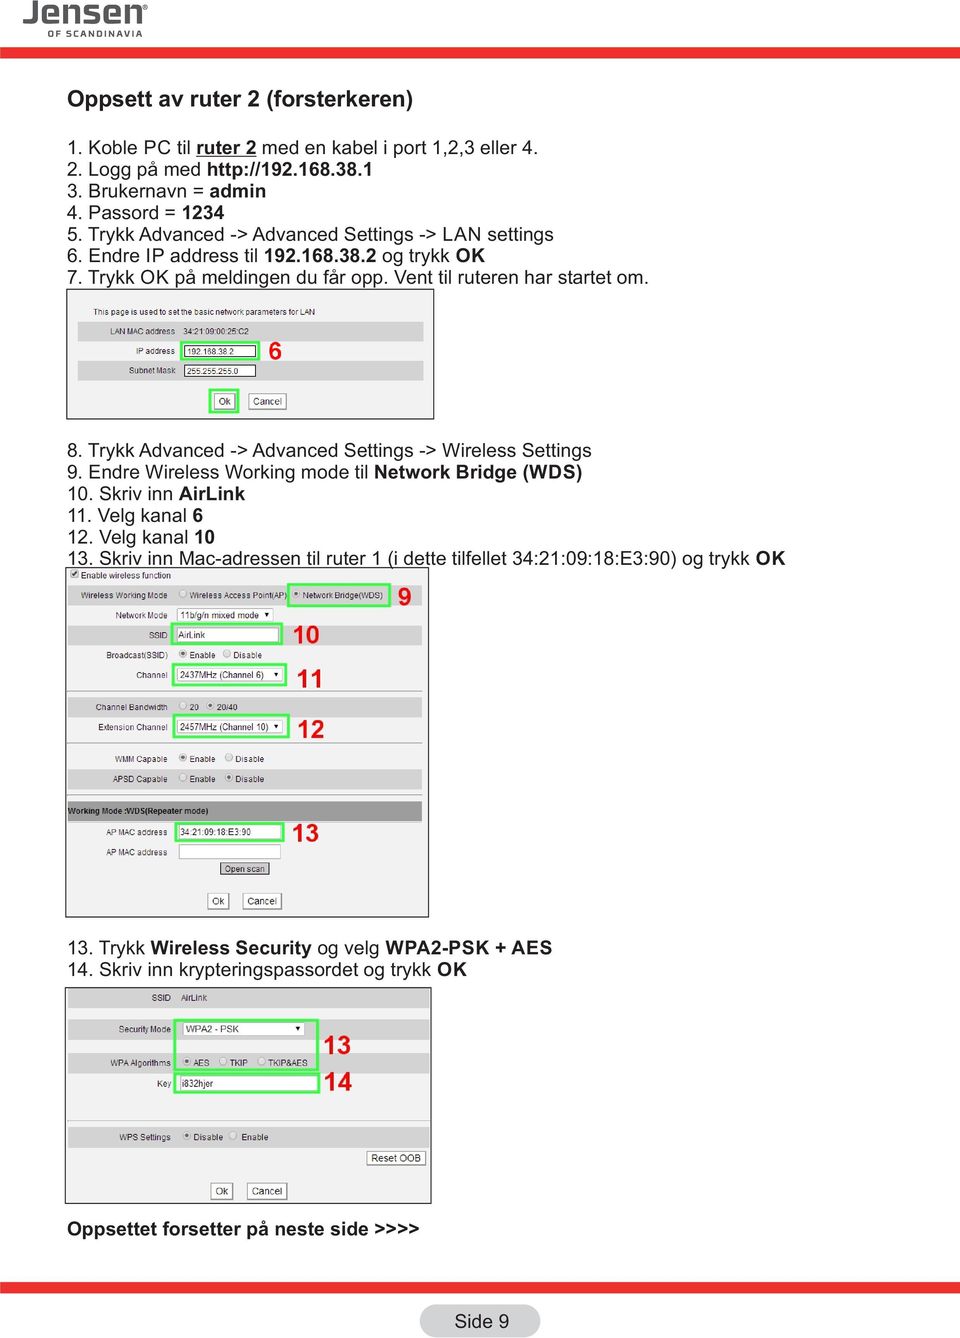 Trykk Advanced -> Advanced Settings -> Wireless Settings 9. Endre Wireless Working mode til Network Bridge (WDS) 10. Skriv inn AirLink 11. Velg kanal 6 12. Velg kanal 10 13.